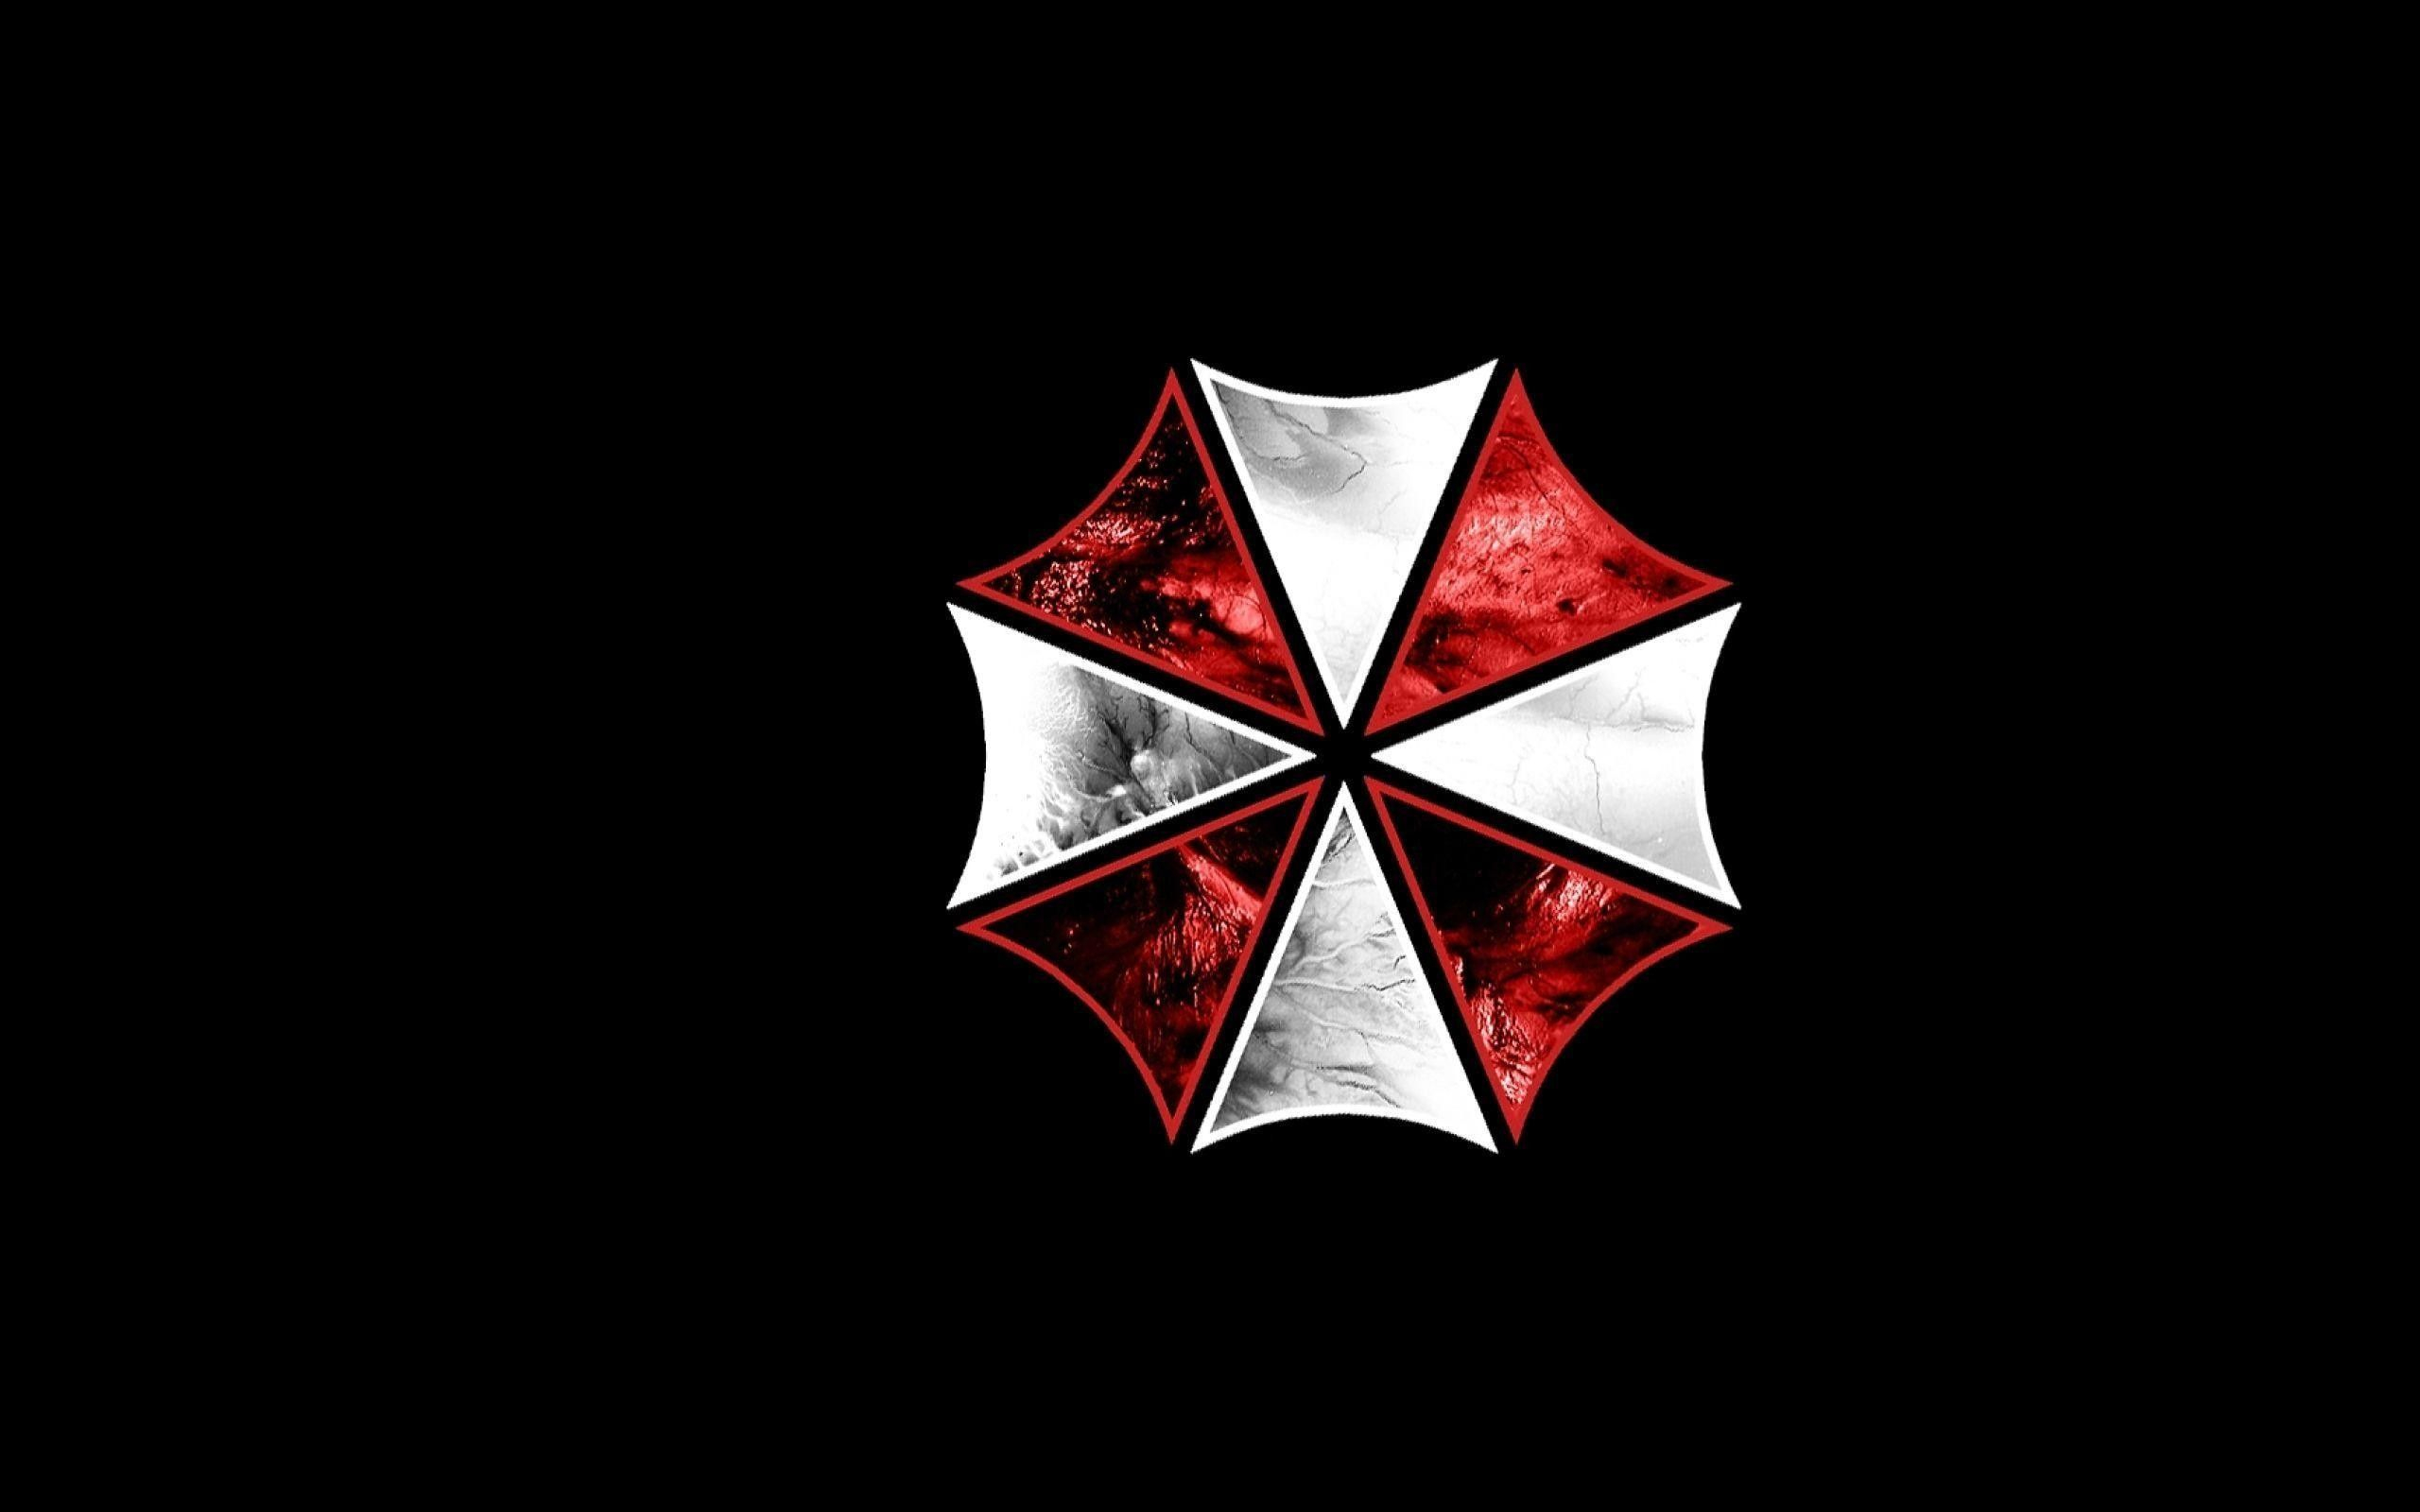 2560x1600 Umbrella Corporation Logo Wallpapers Top Free Umbrella Corporation Logo Backgrounds